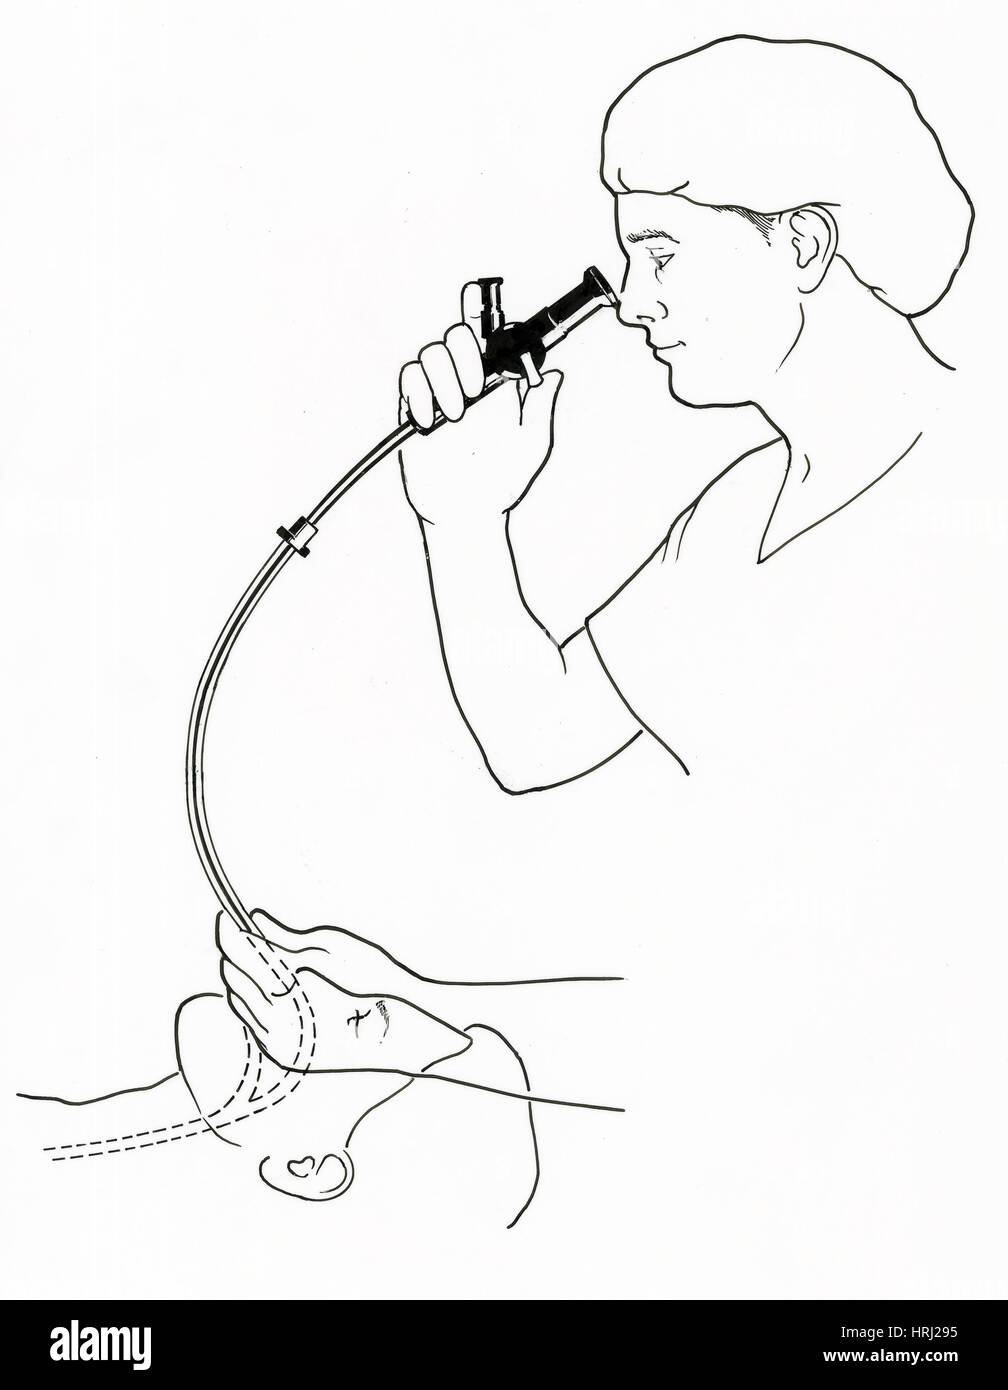 Illustration de l'endoscopie Banque D'Images